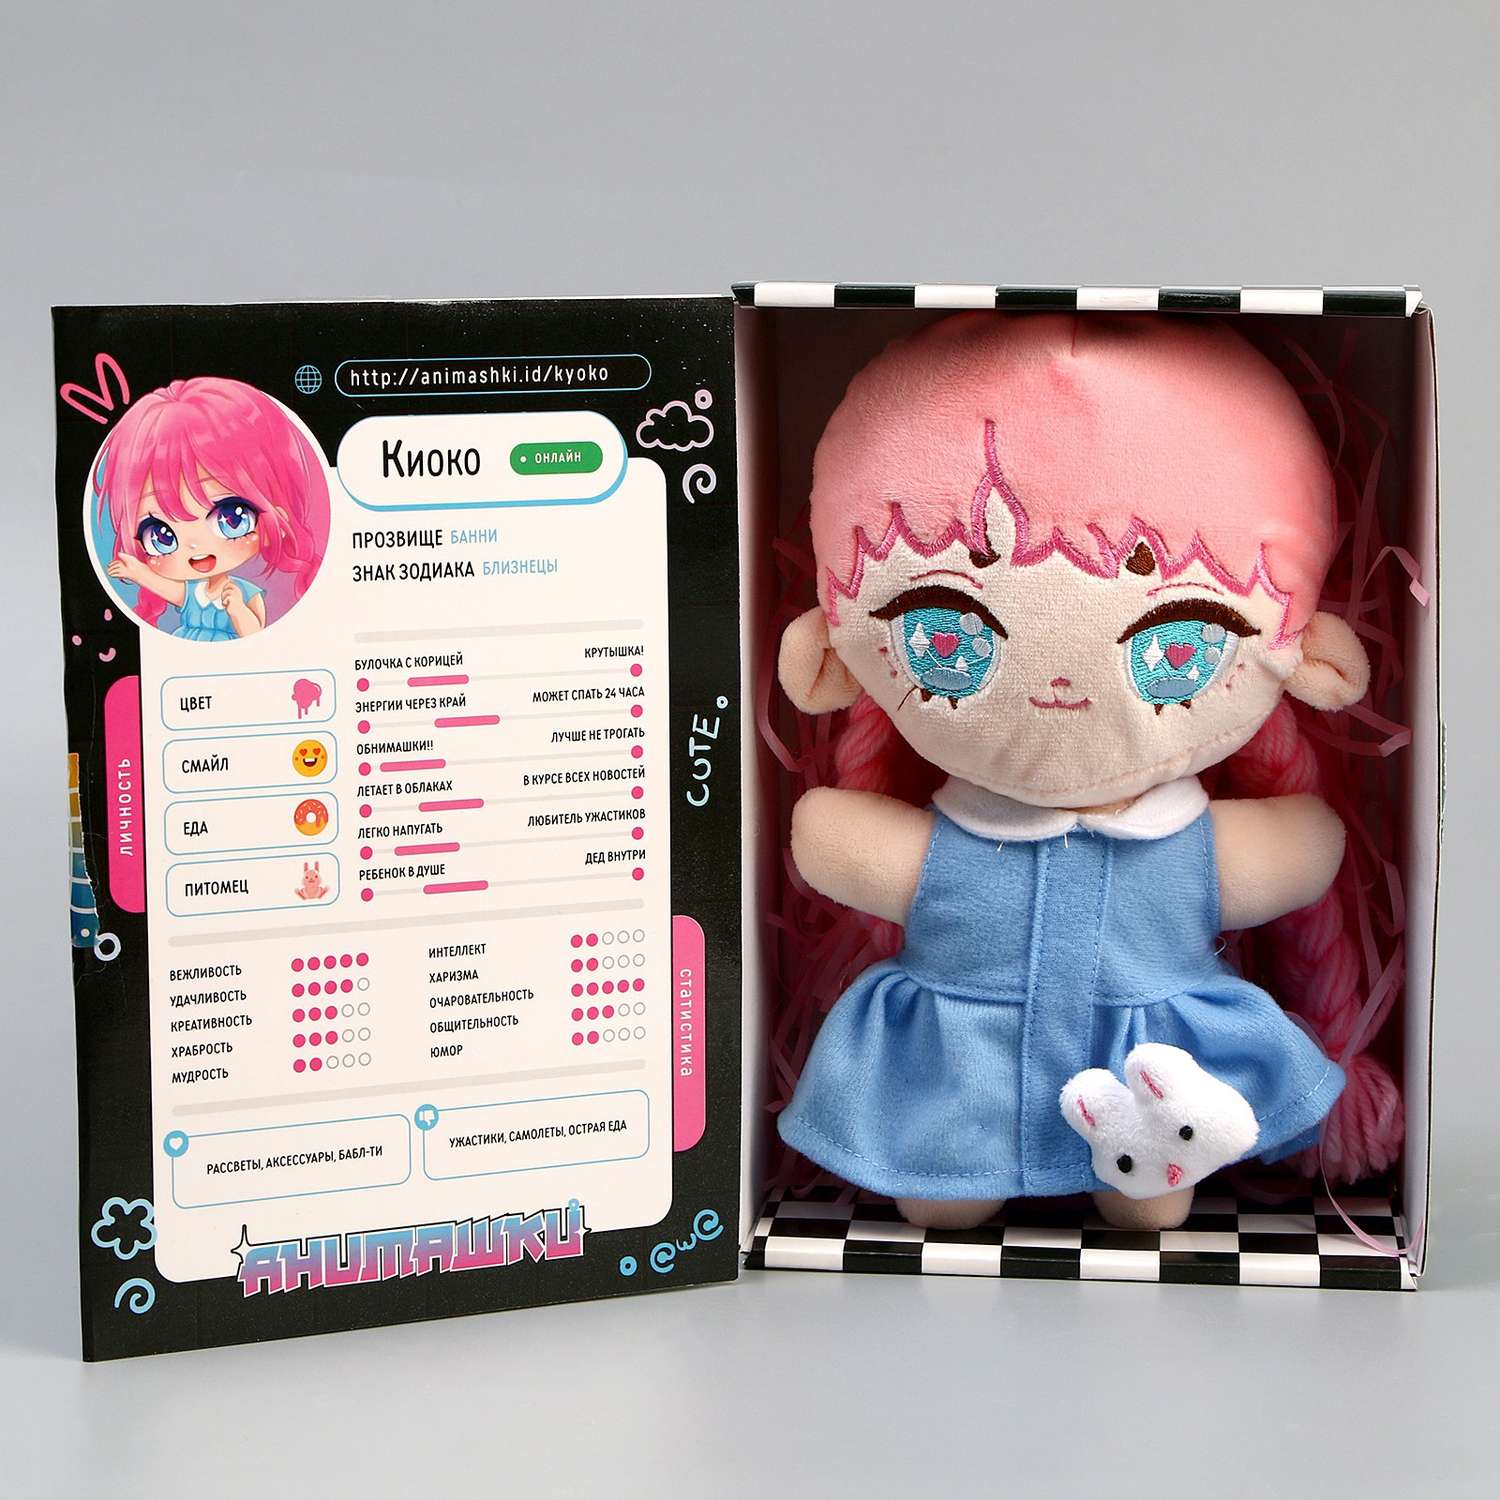 Мягкая кукла Milo Toys «Анимашка» Киоко - фото 7